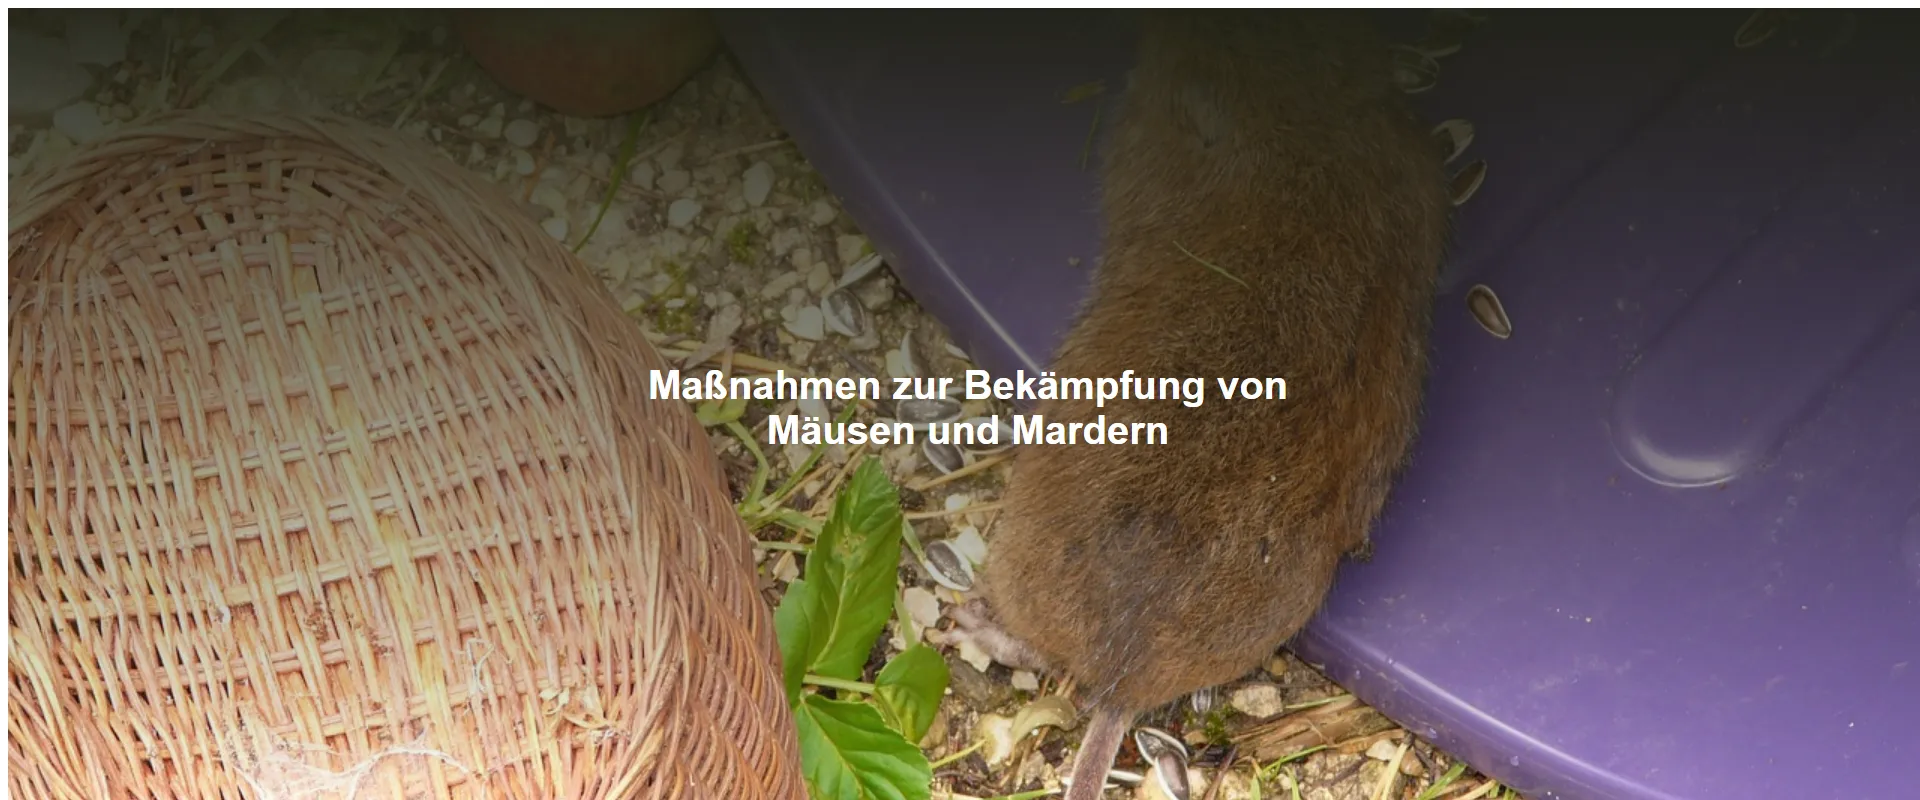 Maßnahmen zur Bekämpfung von Mäusen und Mardern